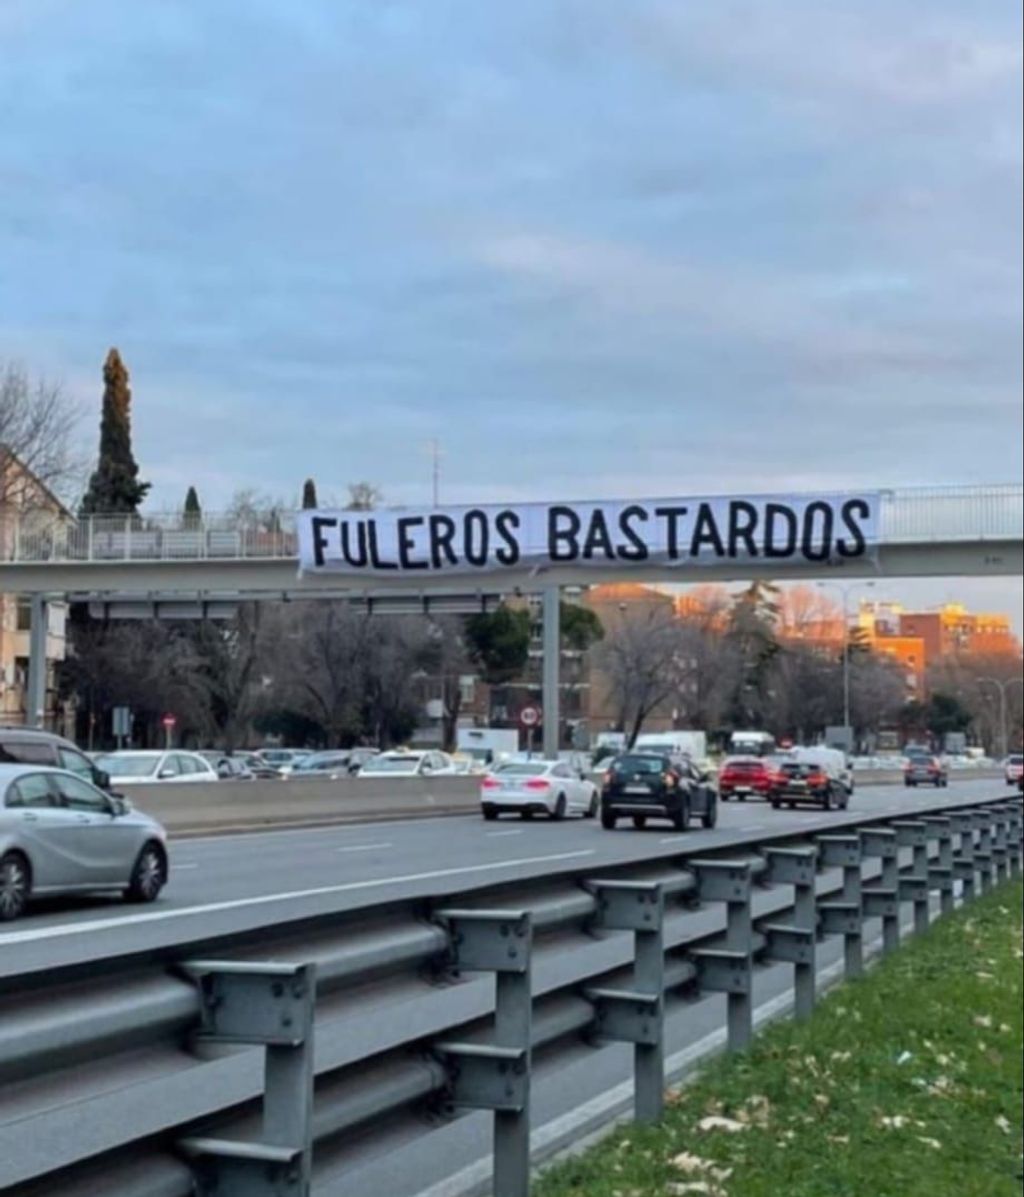 Los ultras del Atlético calientan el derbi con una pancarta contra el Madrid: "Fuleros bastardos"